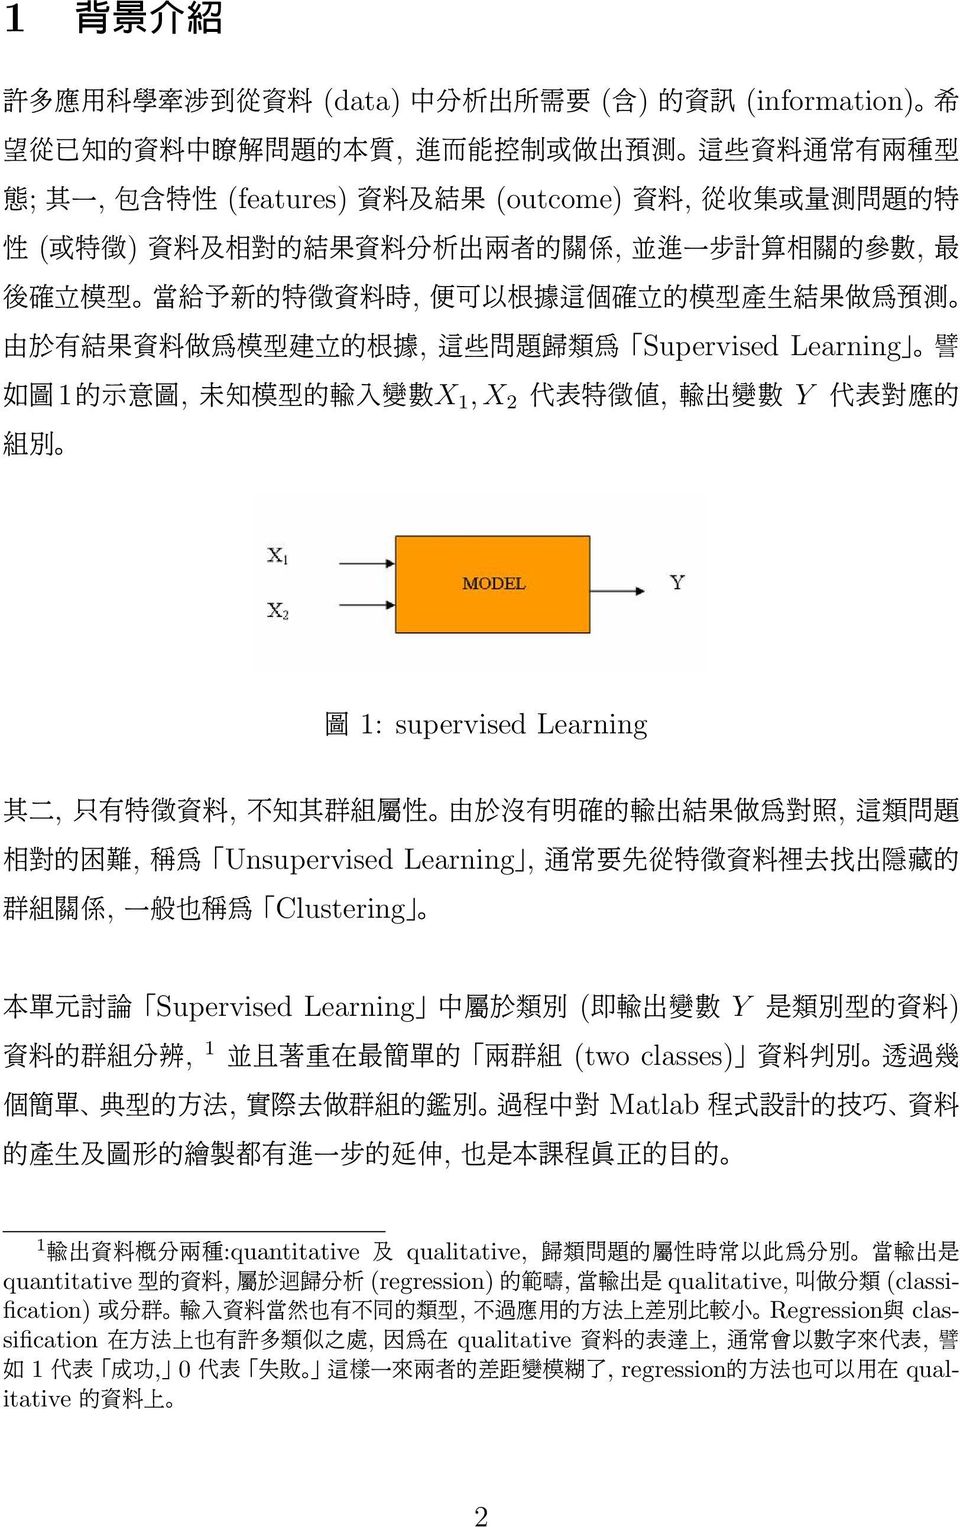 型 建 立 的 根 據, 這 些 問 題 歸 類 為 Supervised Learning 譬 如 圖 1 的 示 意 圖, 未 知 模 型 的 輸 入 變 數 X 1, X 2 代 表 特 徵 值, 輸 出 變 數 Y 代 表 對 應 的 組 別 圖 1: supervised Learning 其 二, 只 有 特 徵 資 料, 不 知 其 群 組 屬 性 由 於 沒 有 明 確 的 輸